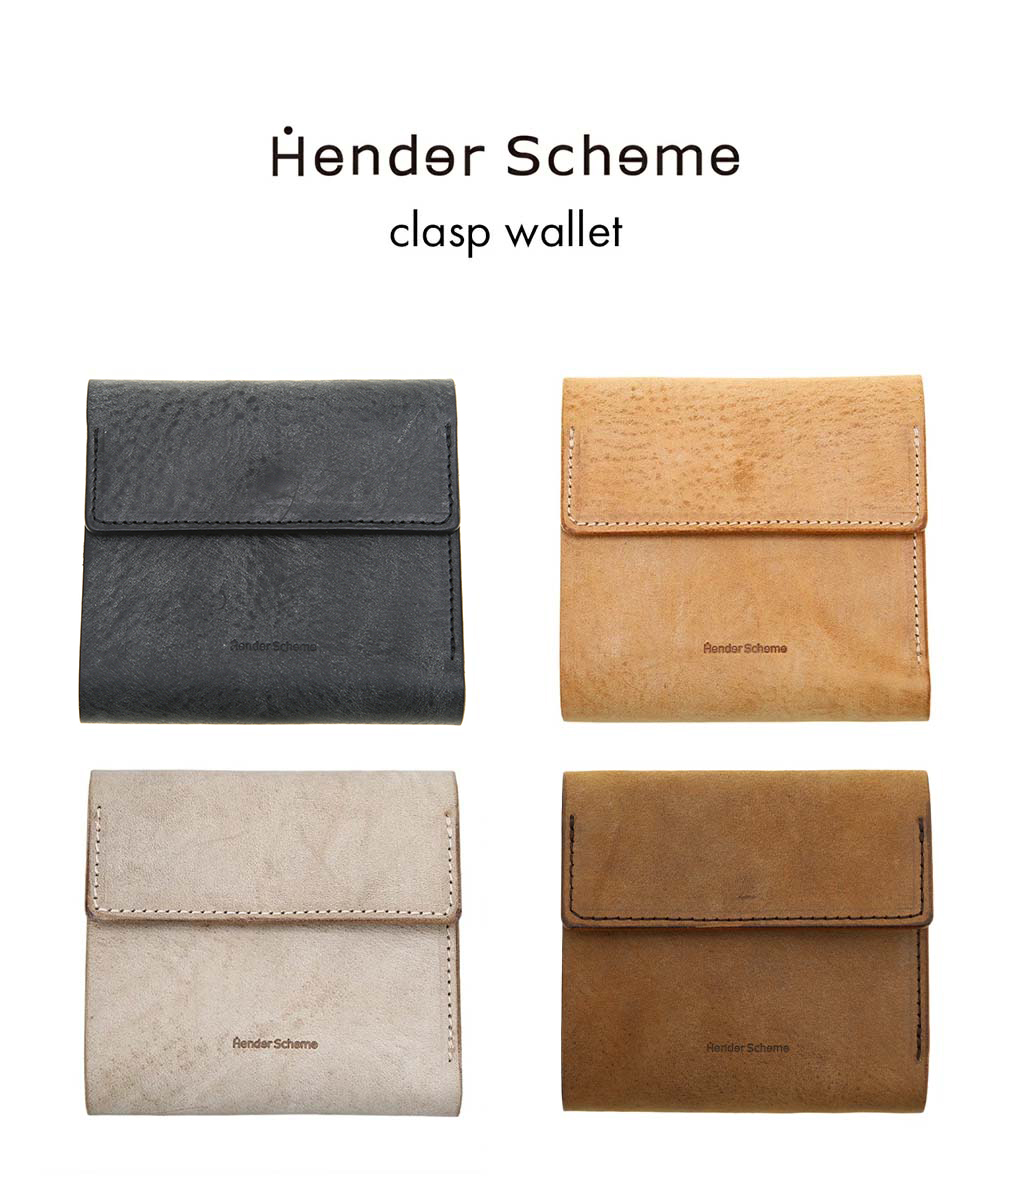 即納 Hender Scheme エンダースキーマ clasp wallet 全4色 三つ折り 財布 クラスプ ウォレット レザー 本革 牛革  ブラック ナチュラル チョコ アイボリー ユニセックス プレゼント ギフト ブランド箱付属 li-rc-clw